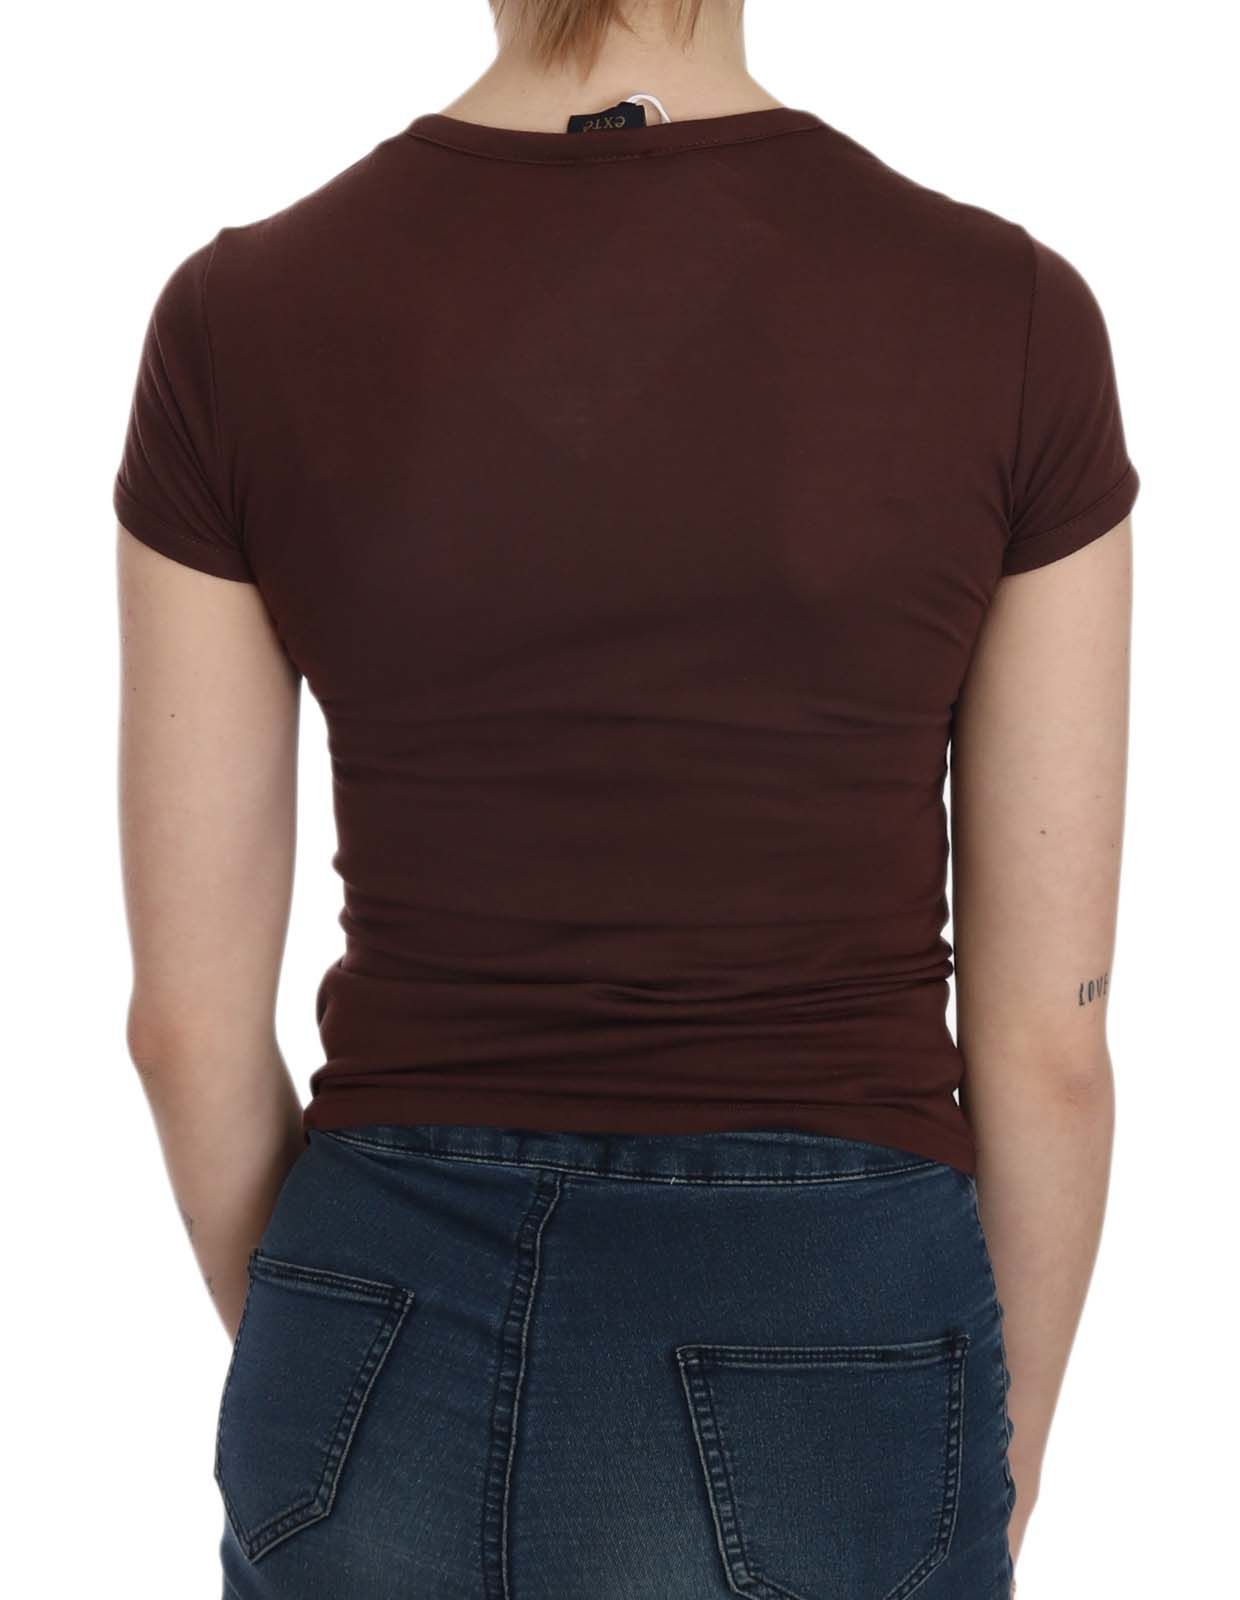 Exte braune Herzen Kurzarm Casual T-Shirt Top